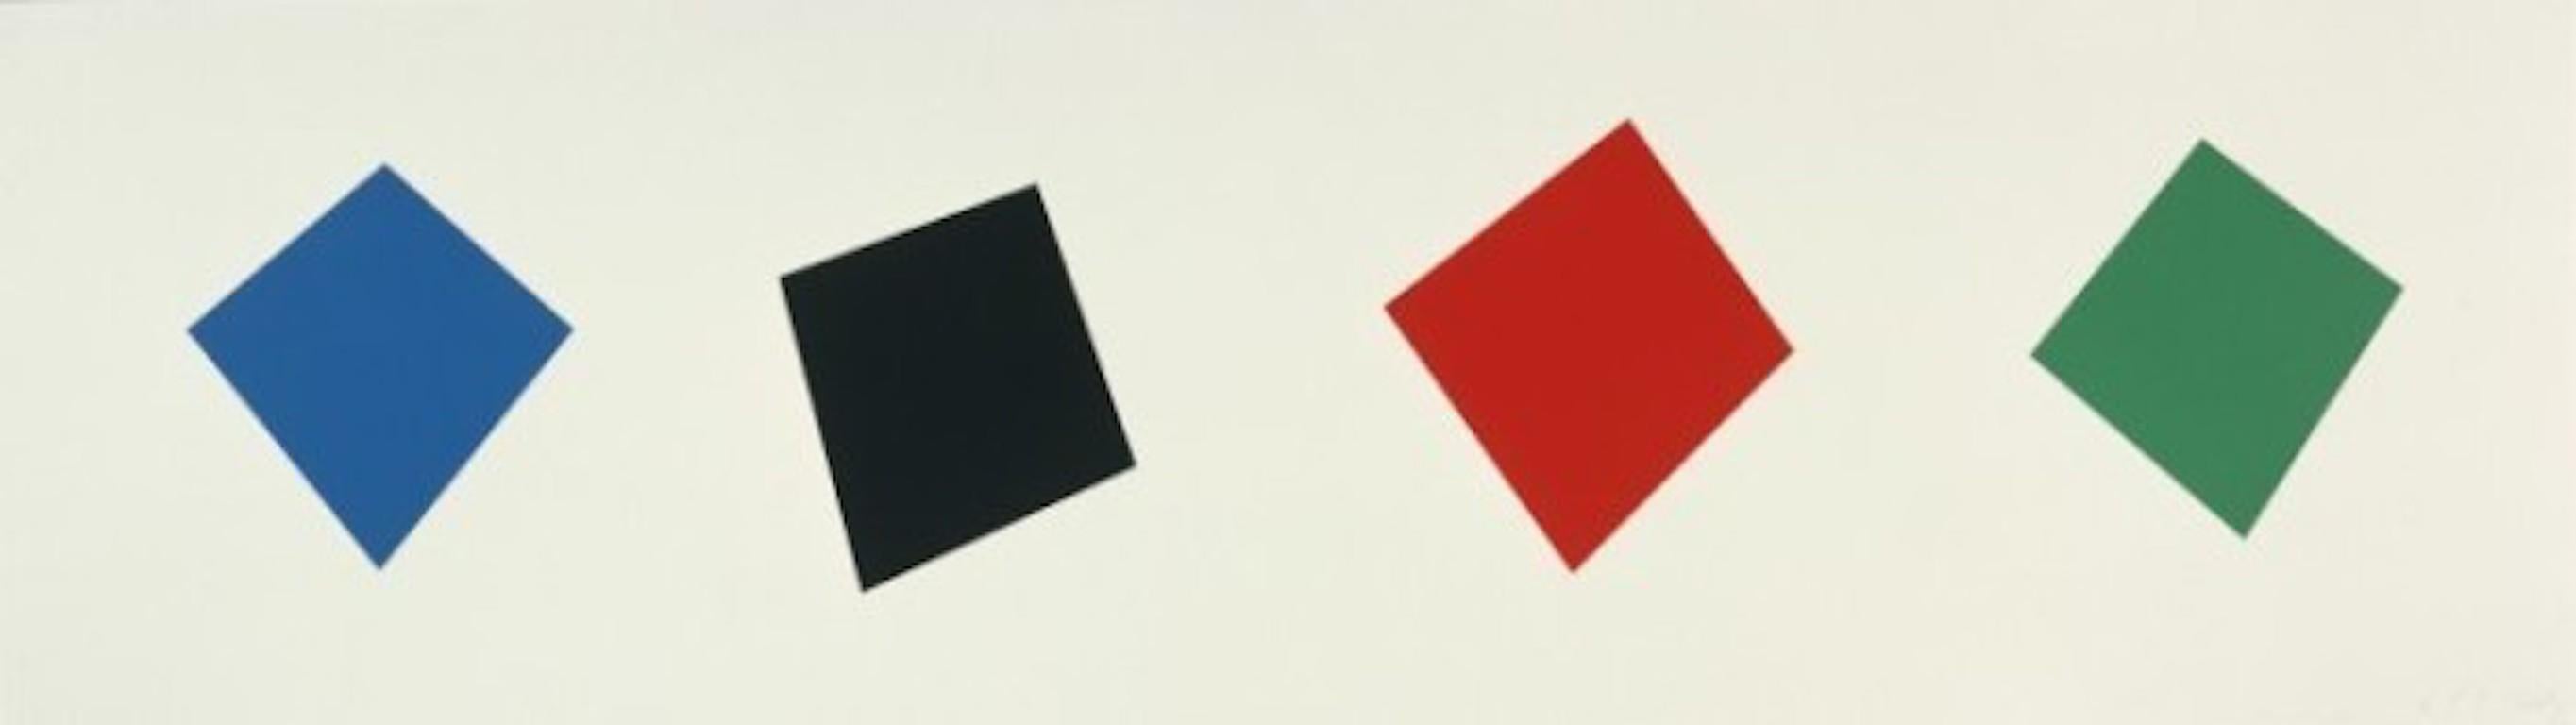 Abstract Print Ellsworth Kelly - Bleu / Noir / Rouge / Vert 